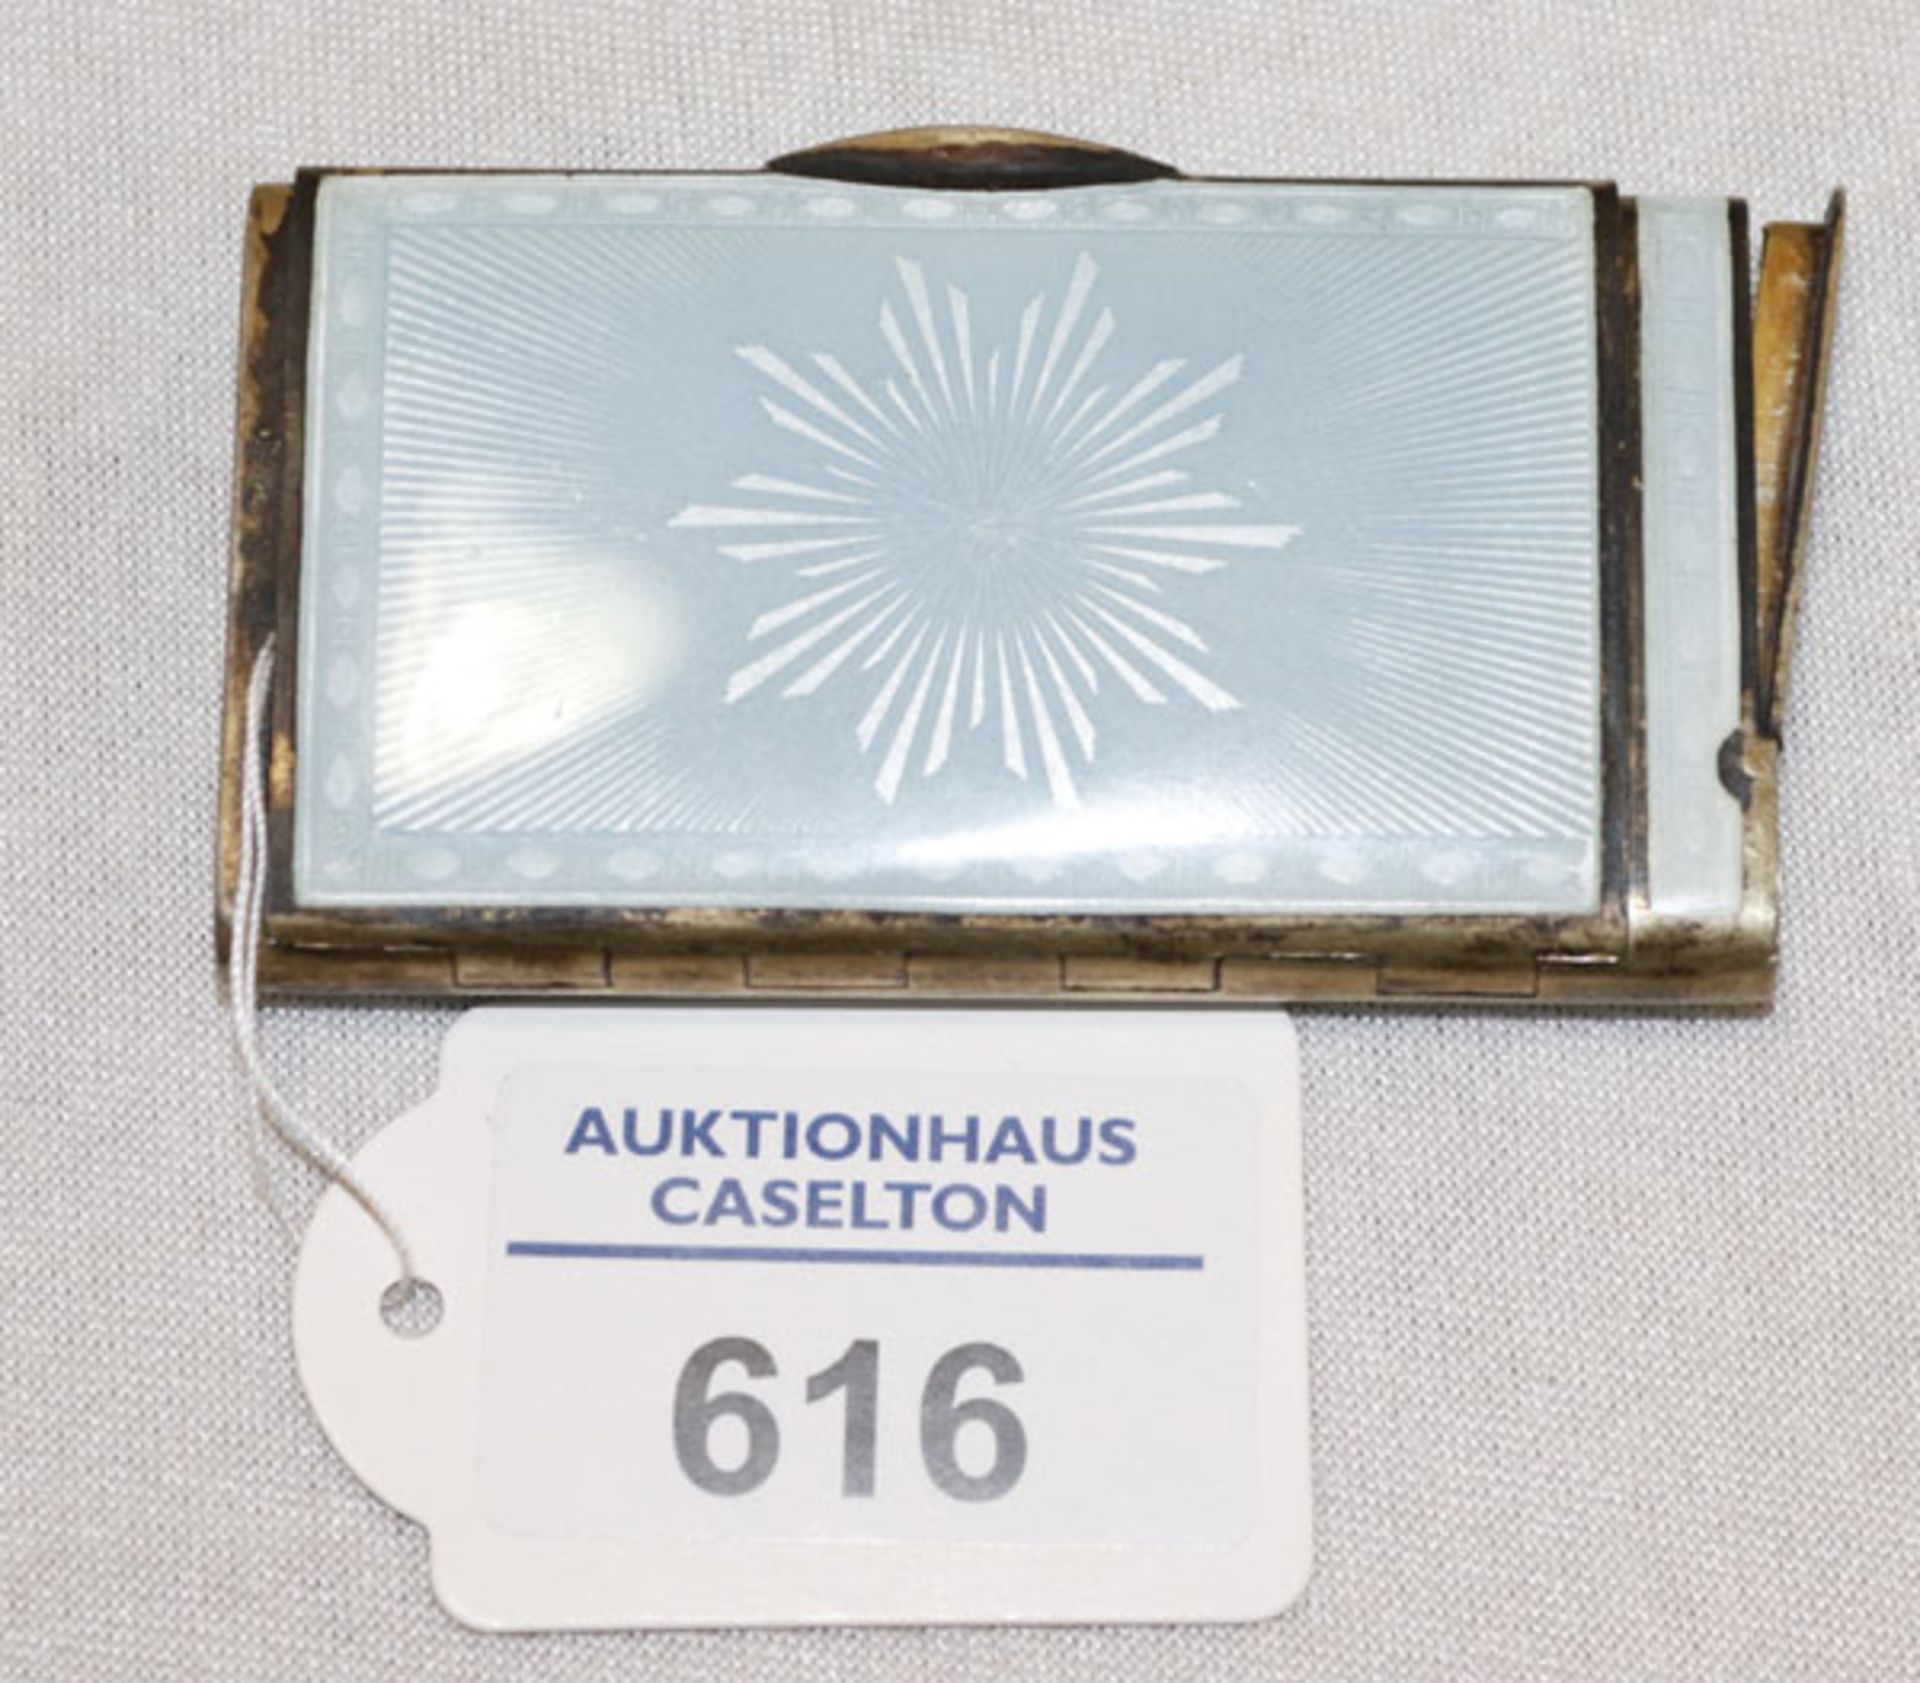 Silber Etui mit Streichholz Reibefläche, und hellblauem Emaildekor, innen feuervergoldet, datiert